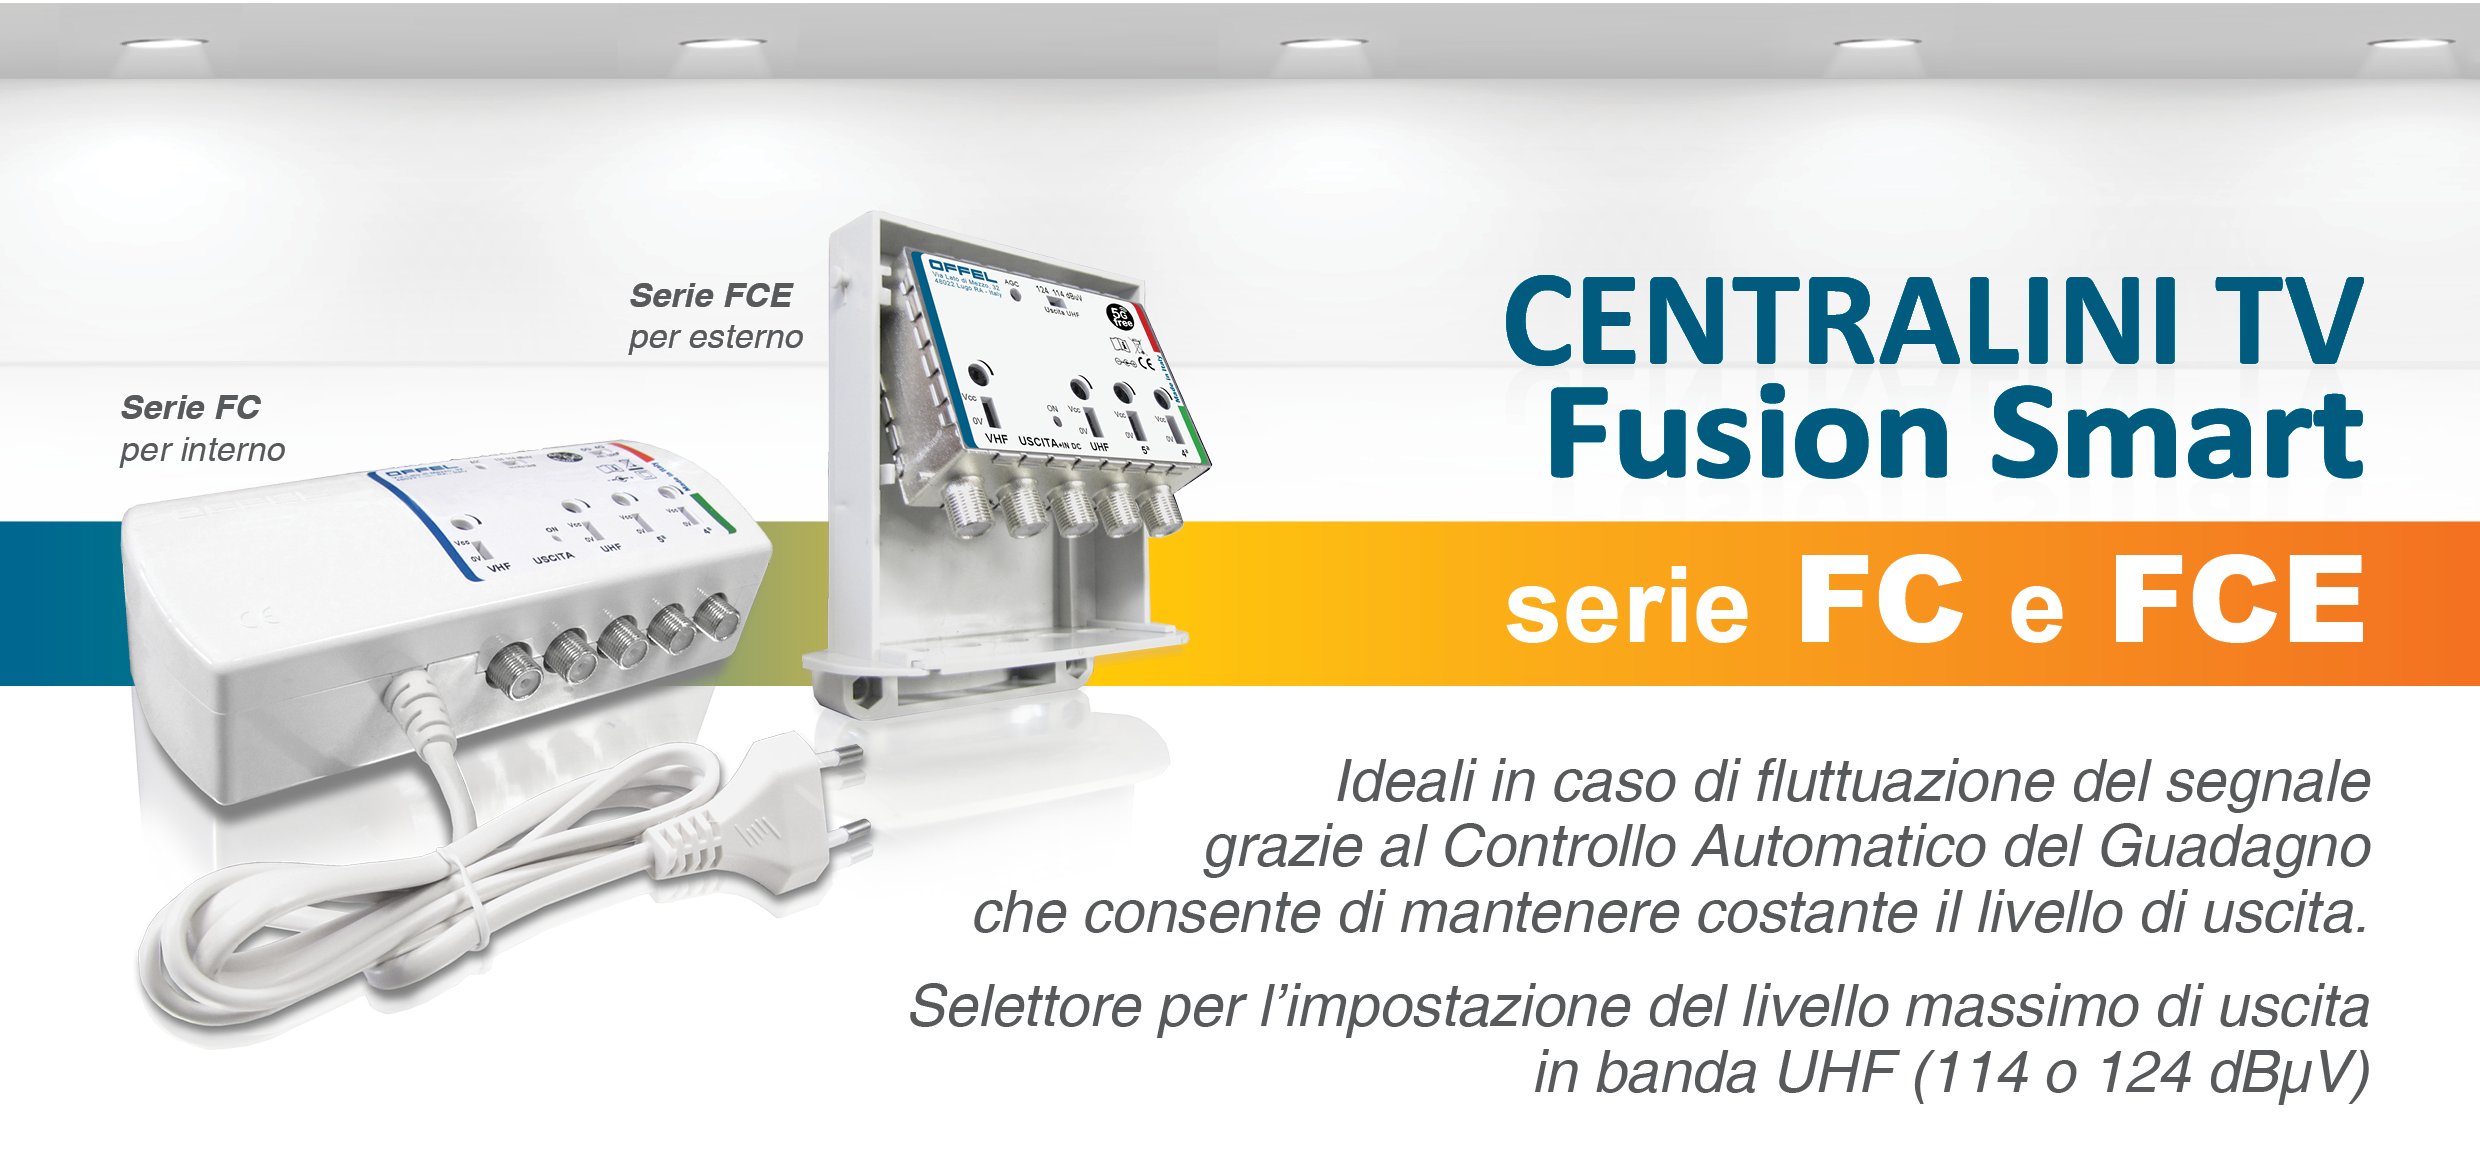 Centralini Fusion Smart